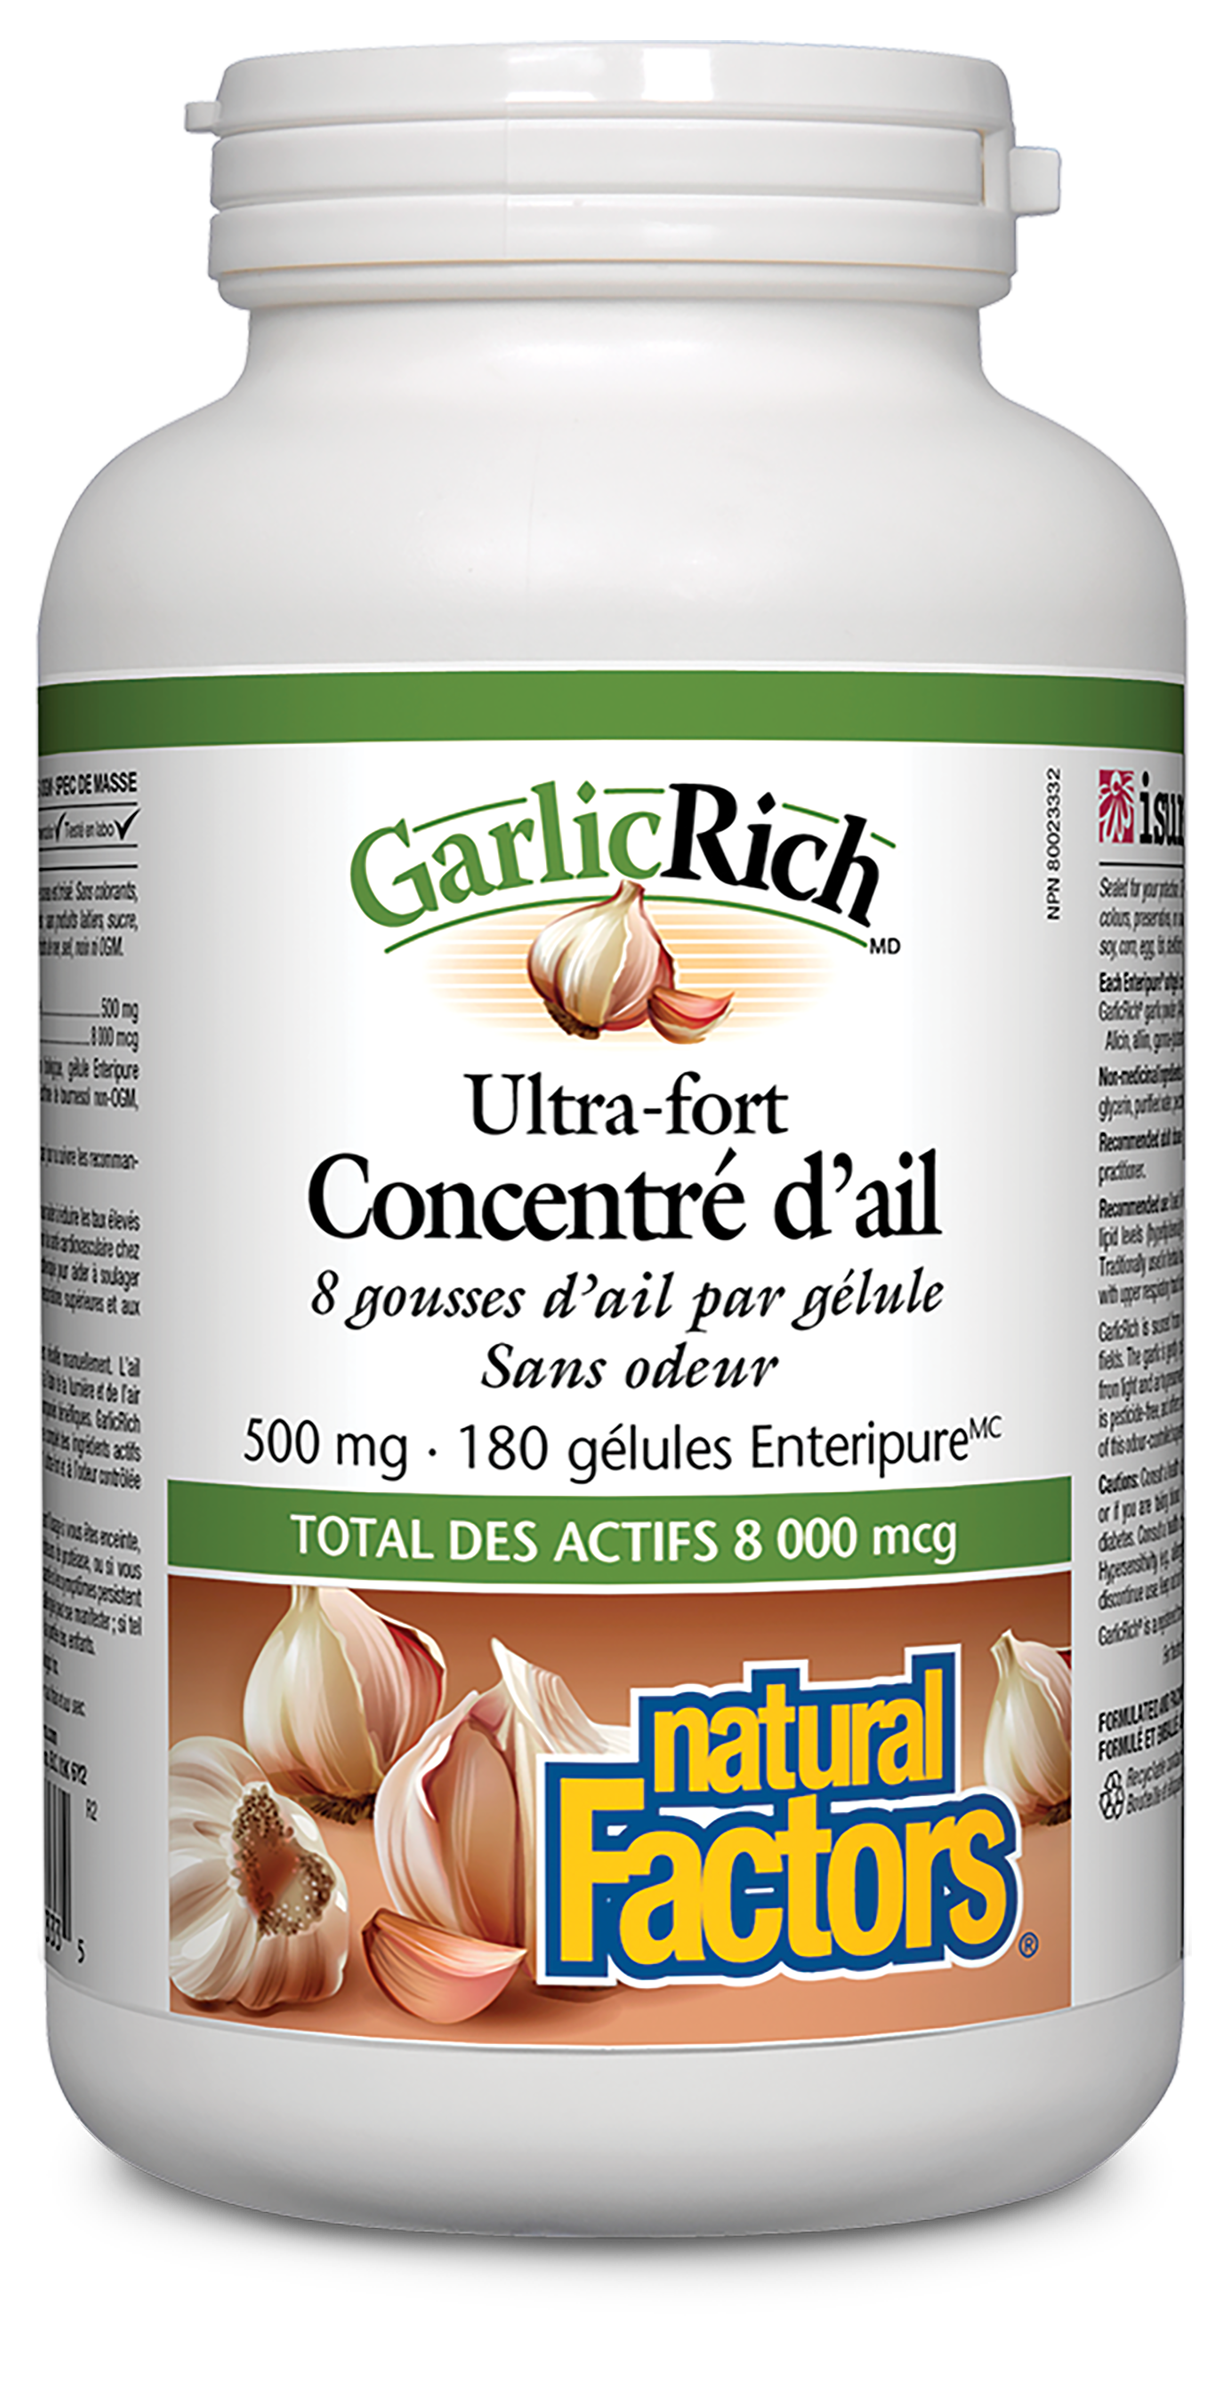 GarlicRich Ultra-fort Concentré d’ail 500 mg, Natural Factors|v|image|2333